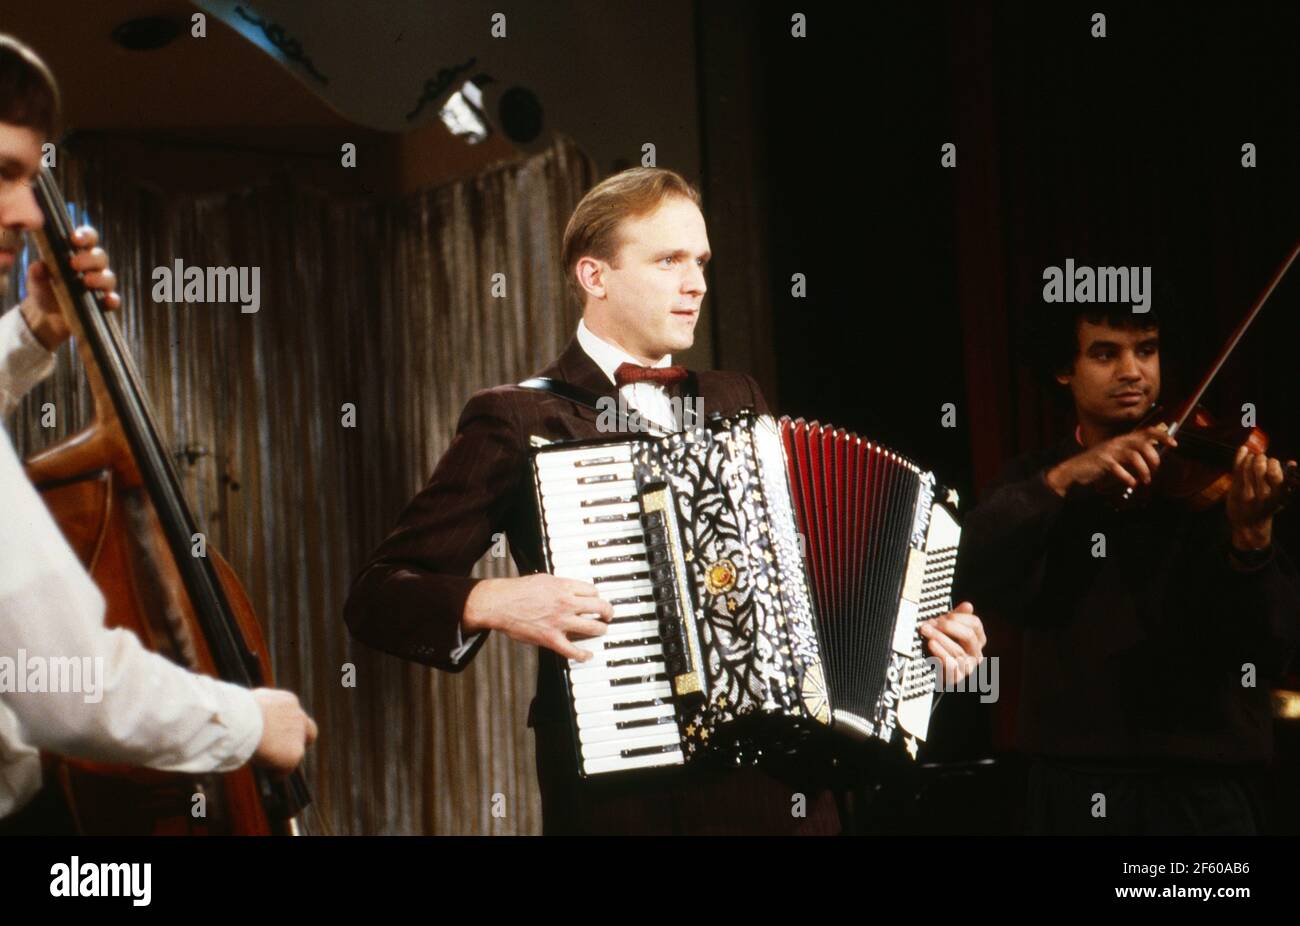 In meinem Herzen, Schatz... aka Stadtmusik, Dokumentarfilm, Deutschland 1989, Darsteller: Ulrich Tukur spielt Akkordeon Foto Stock